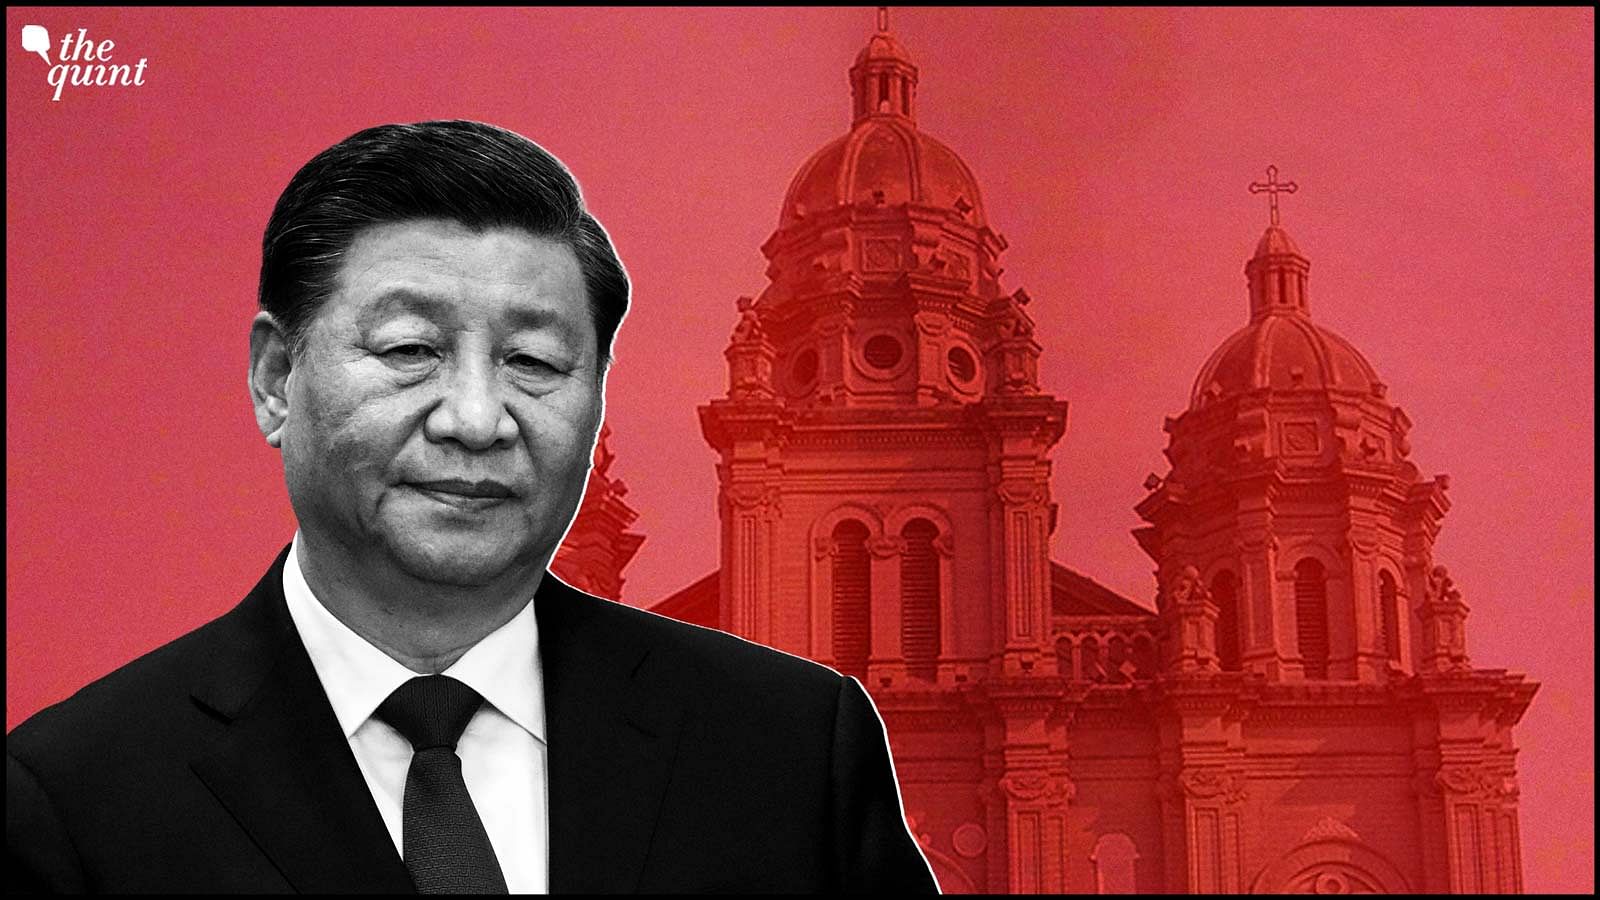 <div class="paragraphs"><p>Representational image of Xi Jinping and&nbsp;Wangfujing Church in Beijing.</p></div>